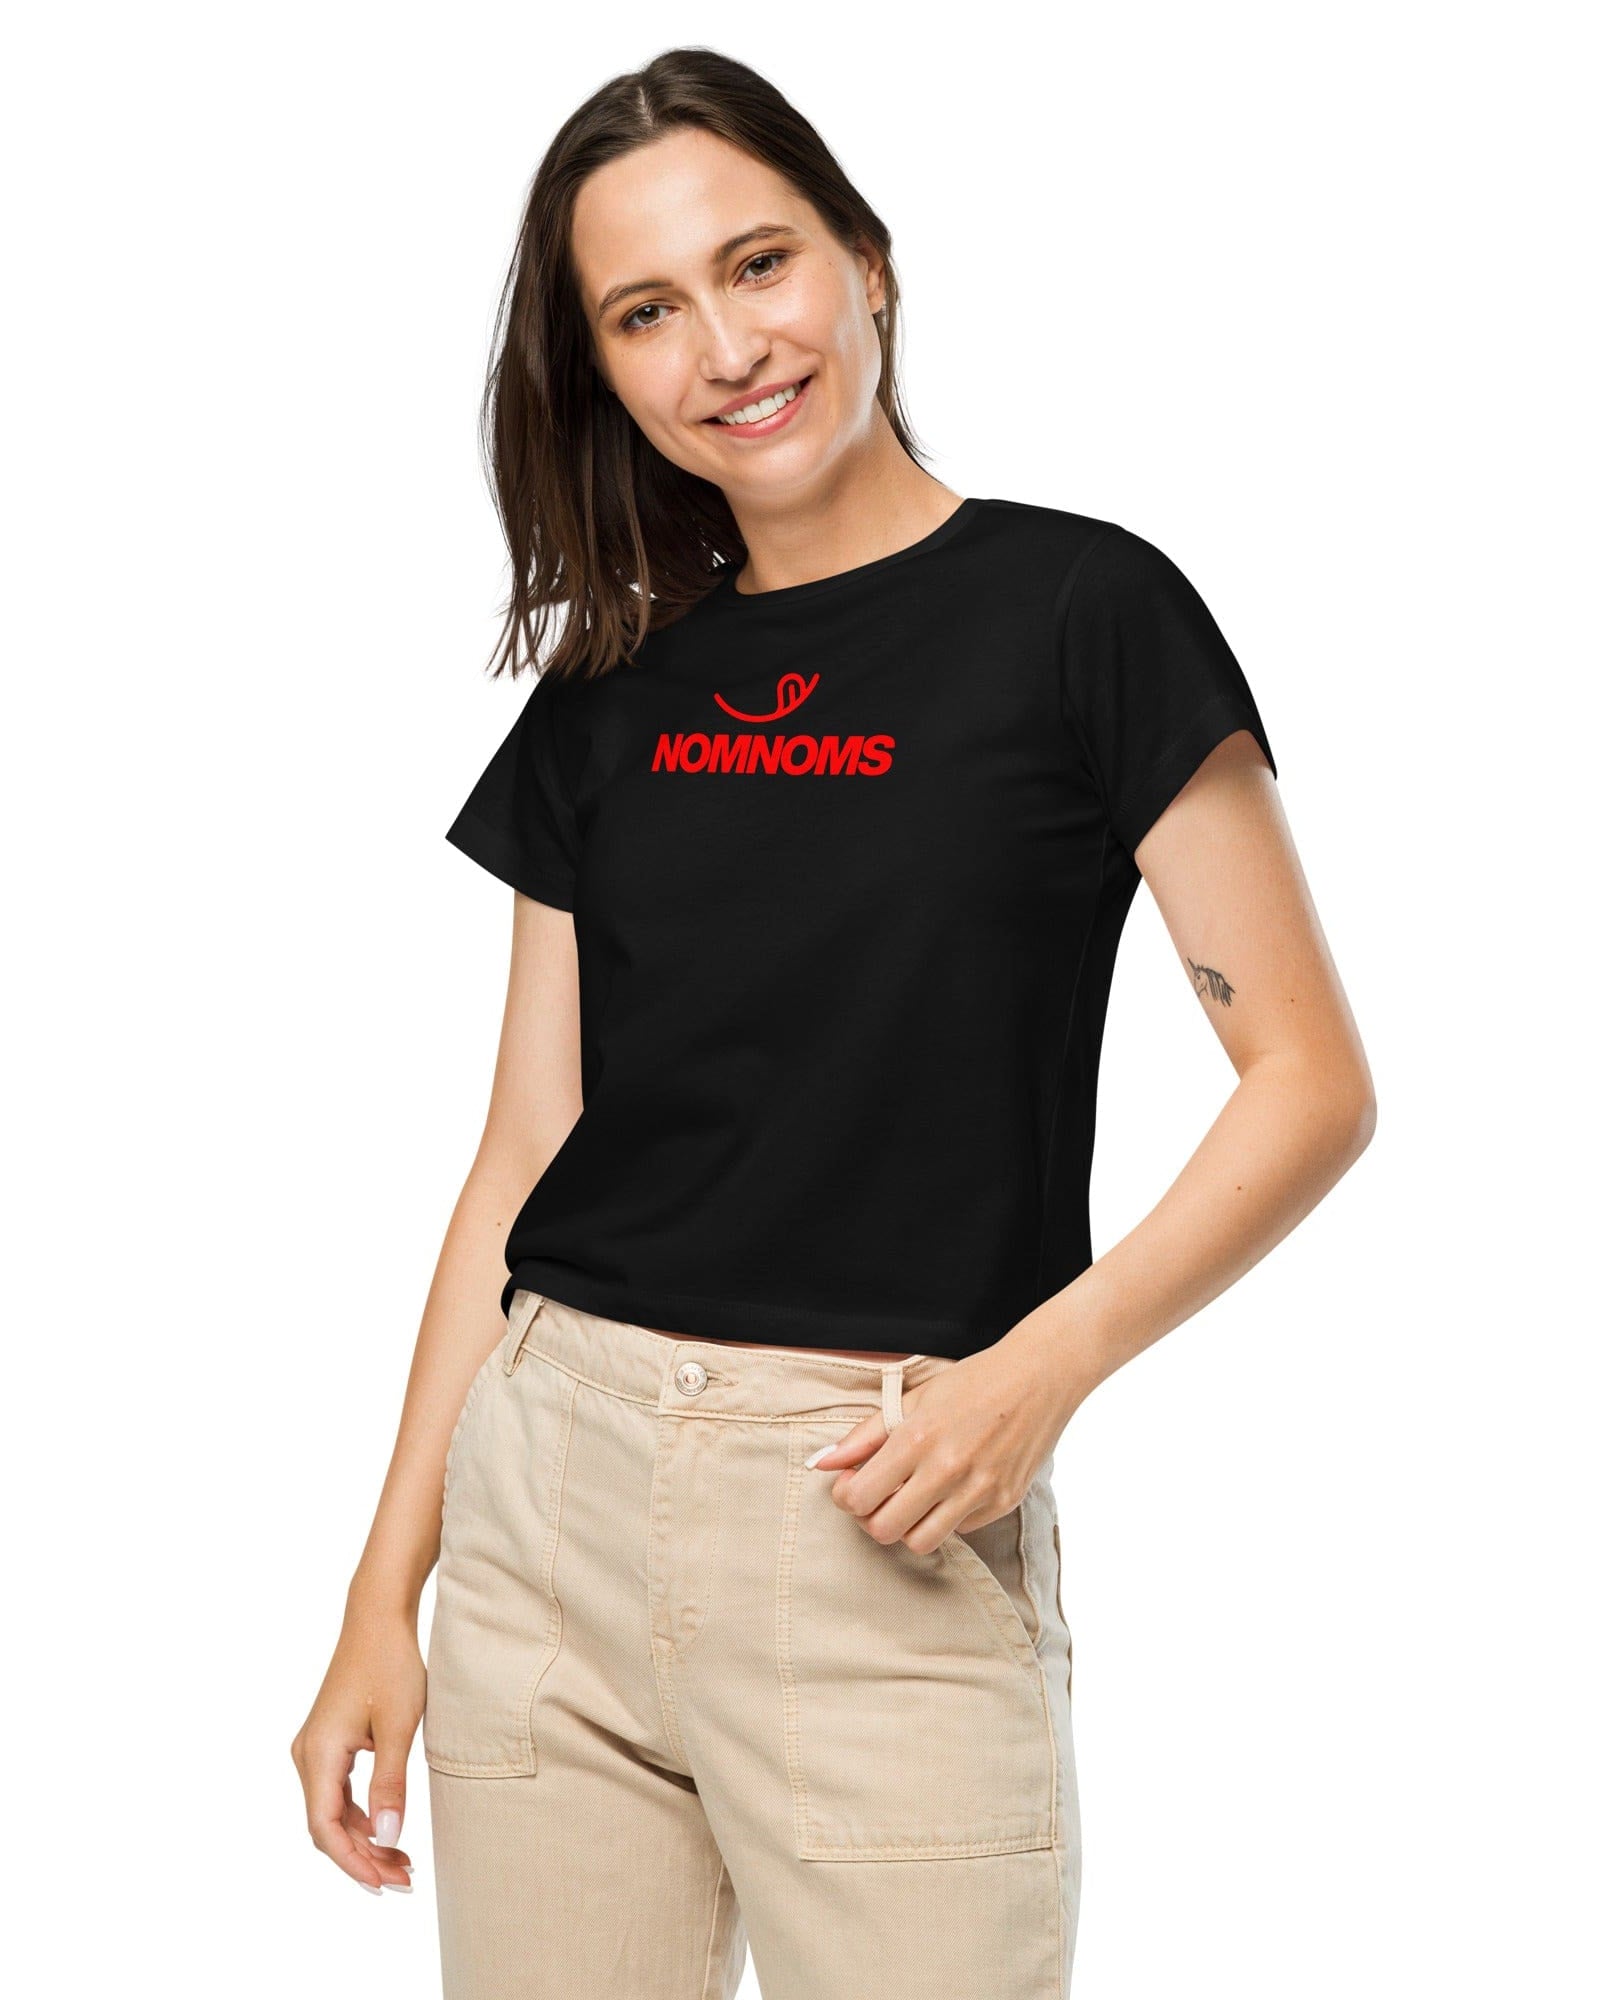 Nomnoms Women’s High-Waisted T-shirt S Shirts & Tops Jolly & Goode